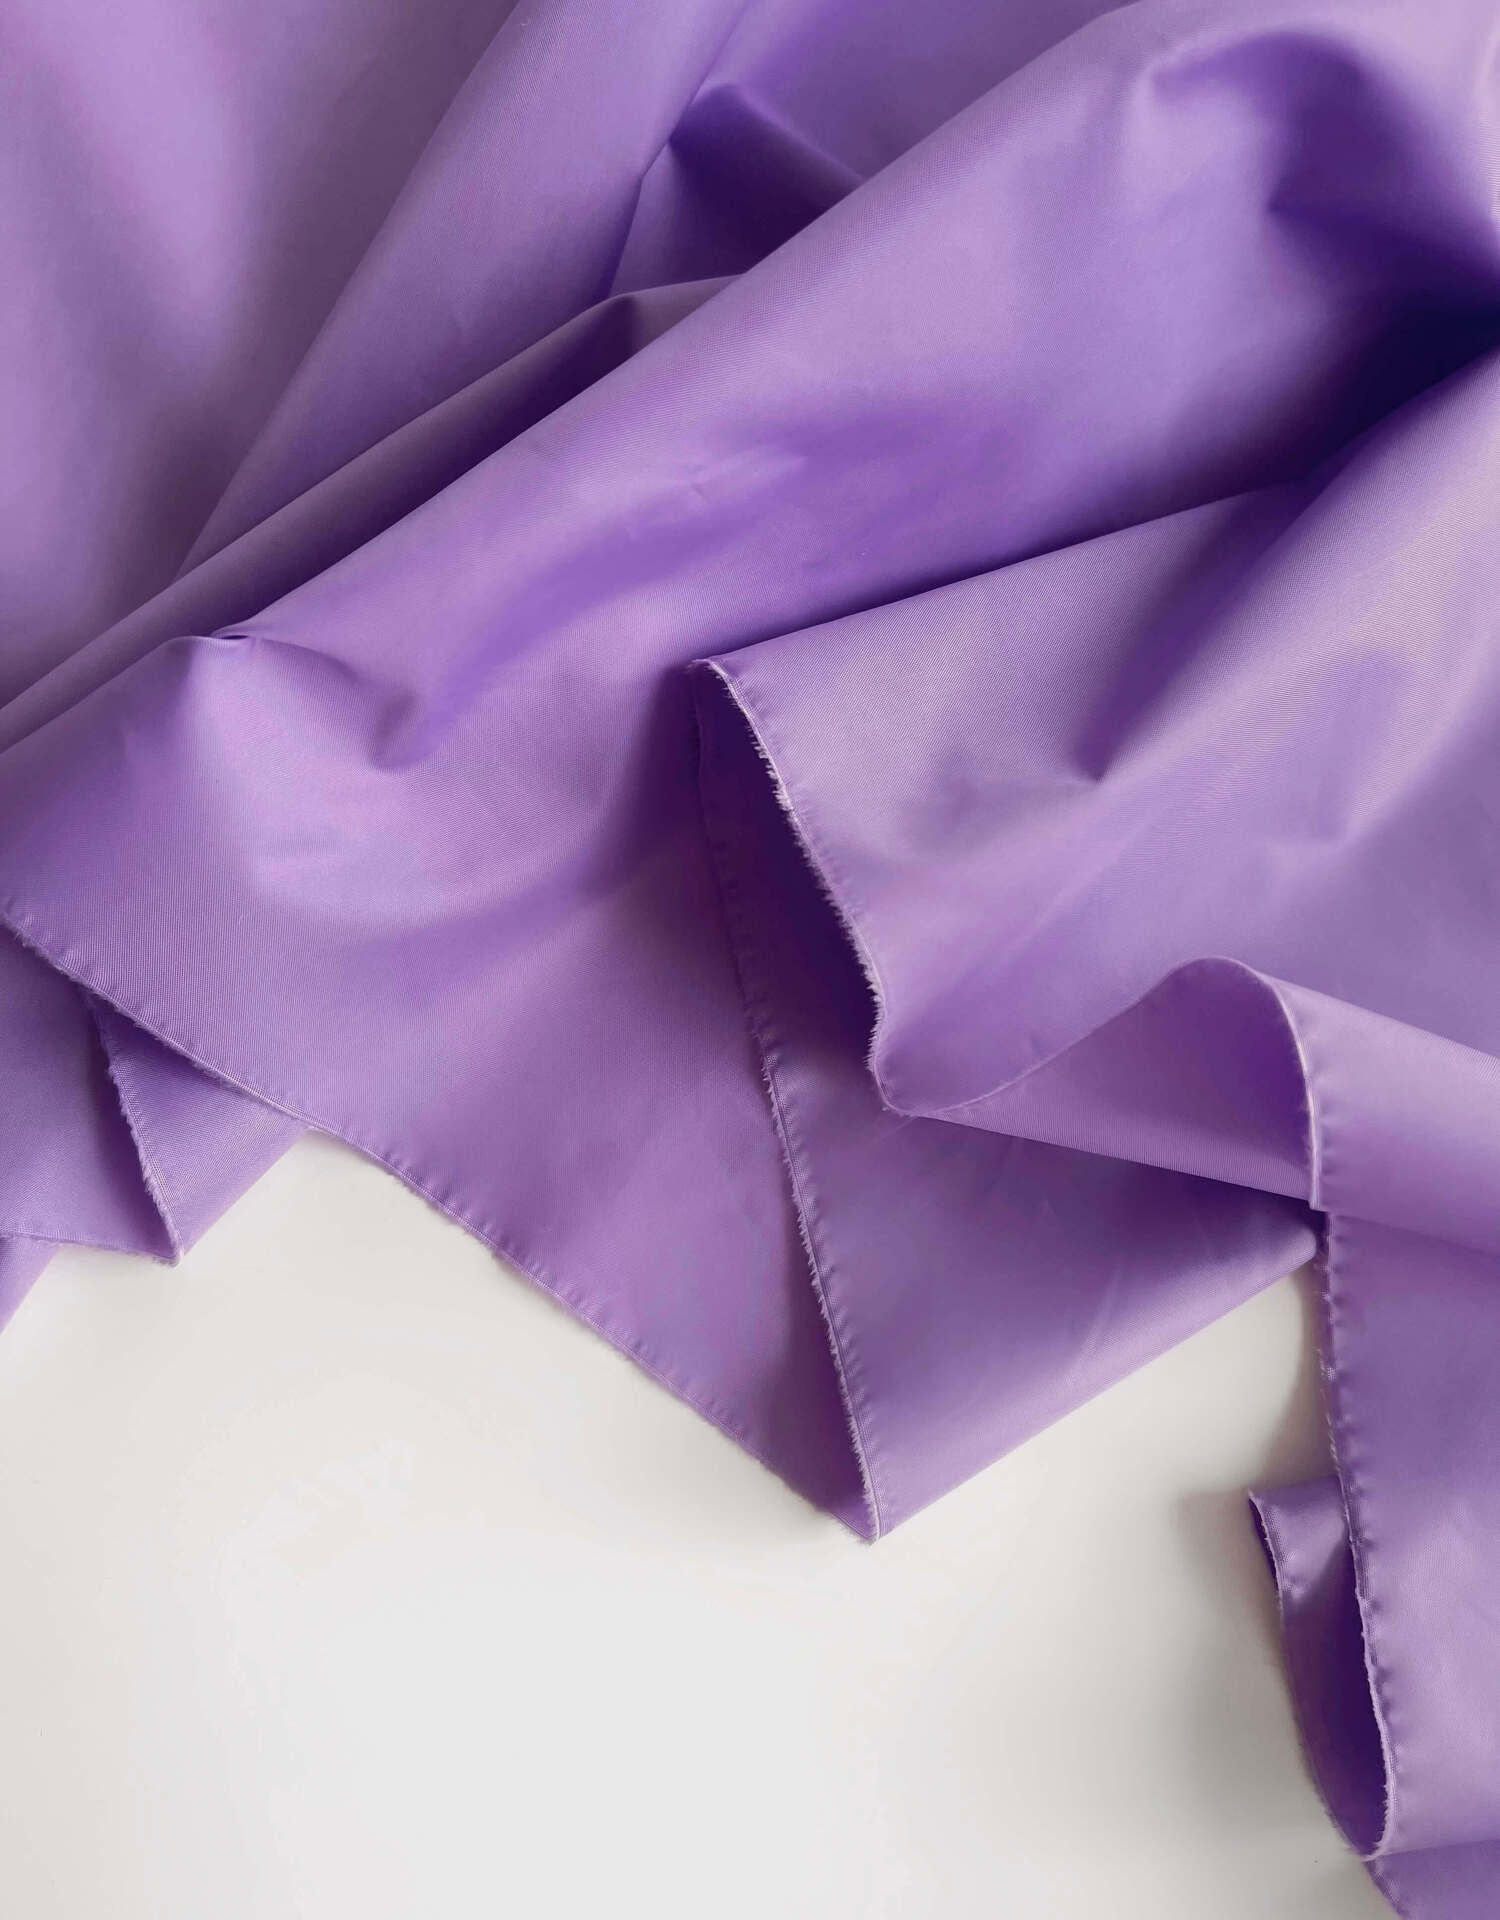 Плащевая ткань фиолетовый